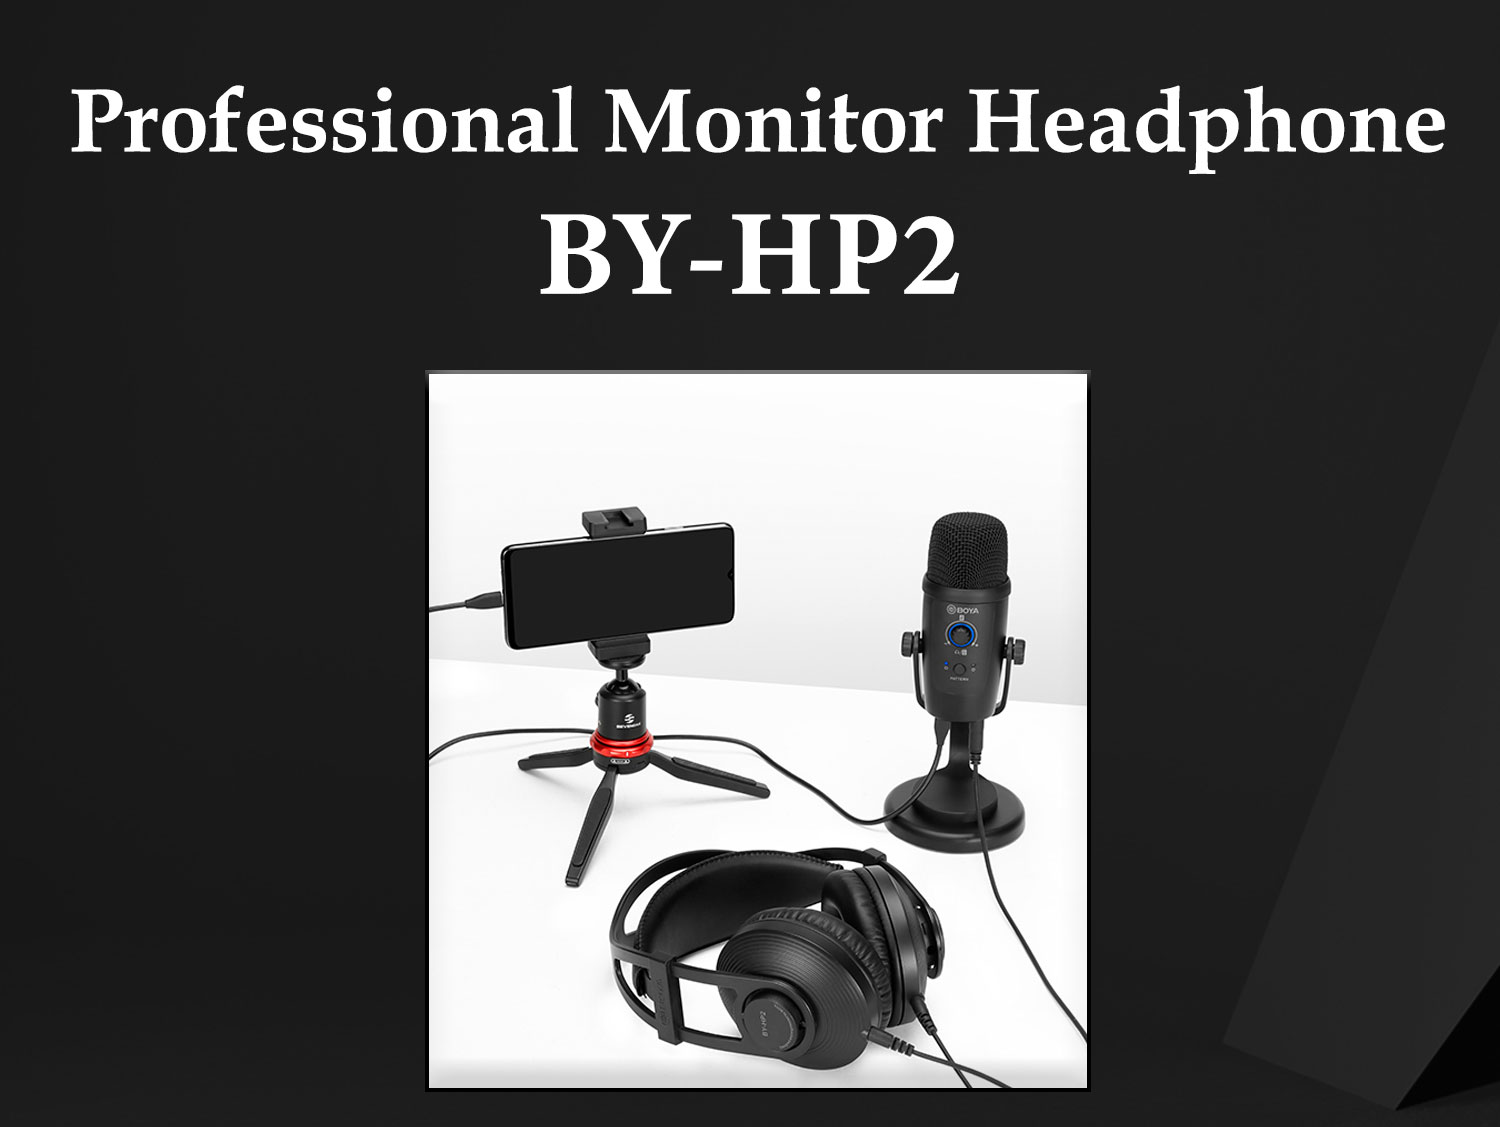 Headphone BY-HP2